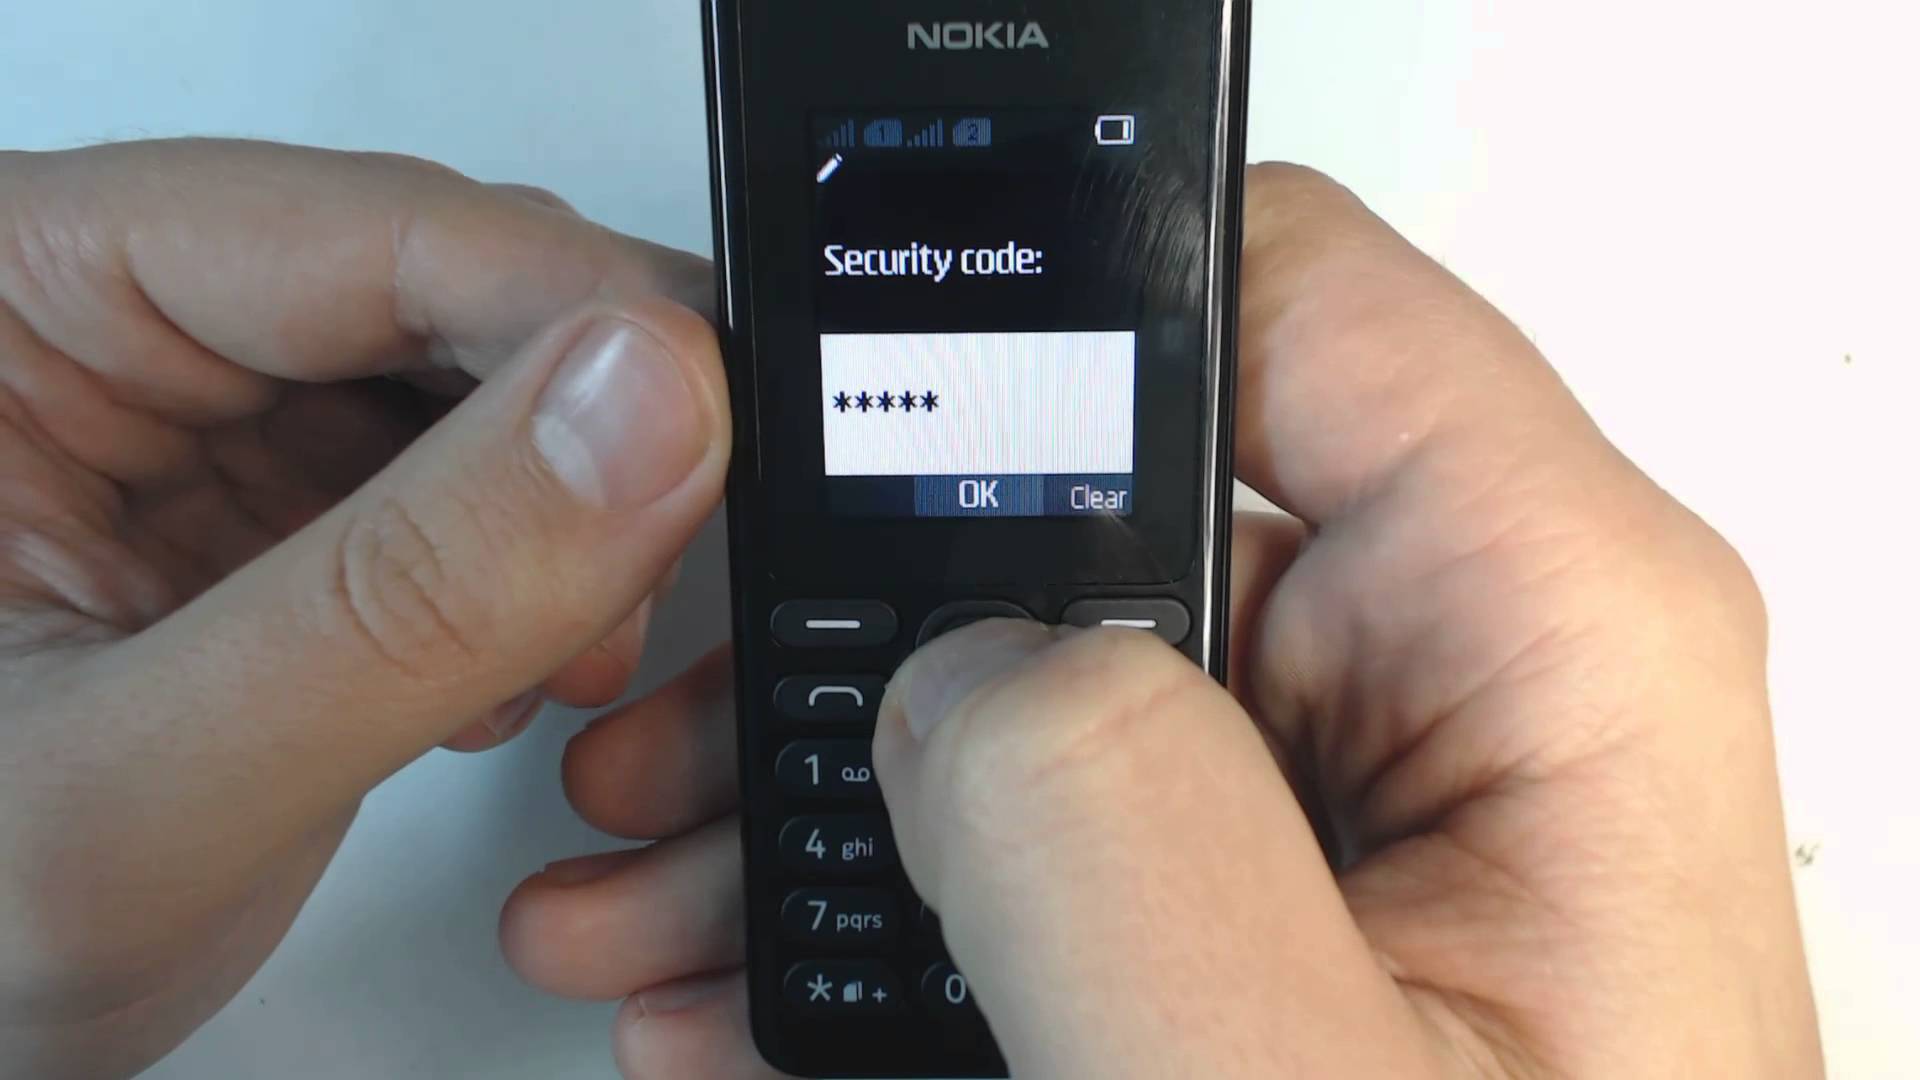 Как убрать забытый пин код. Пин код телефона нокиа кнопочный 105. Защитный код Nokia кнопочный. Защитный код нокиа 105. Телефон Nokia 108 Dual SIM.